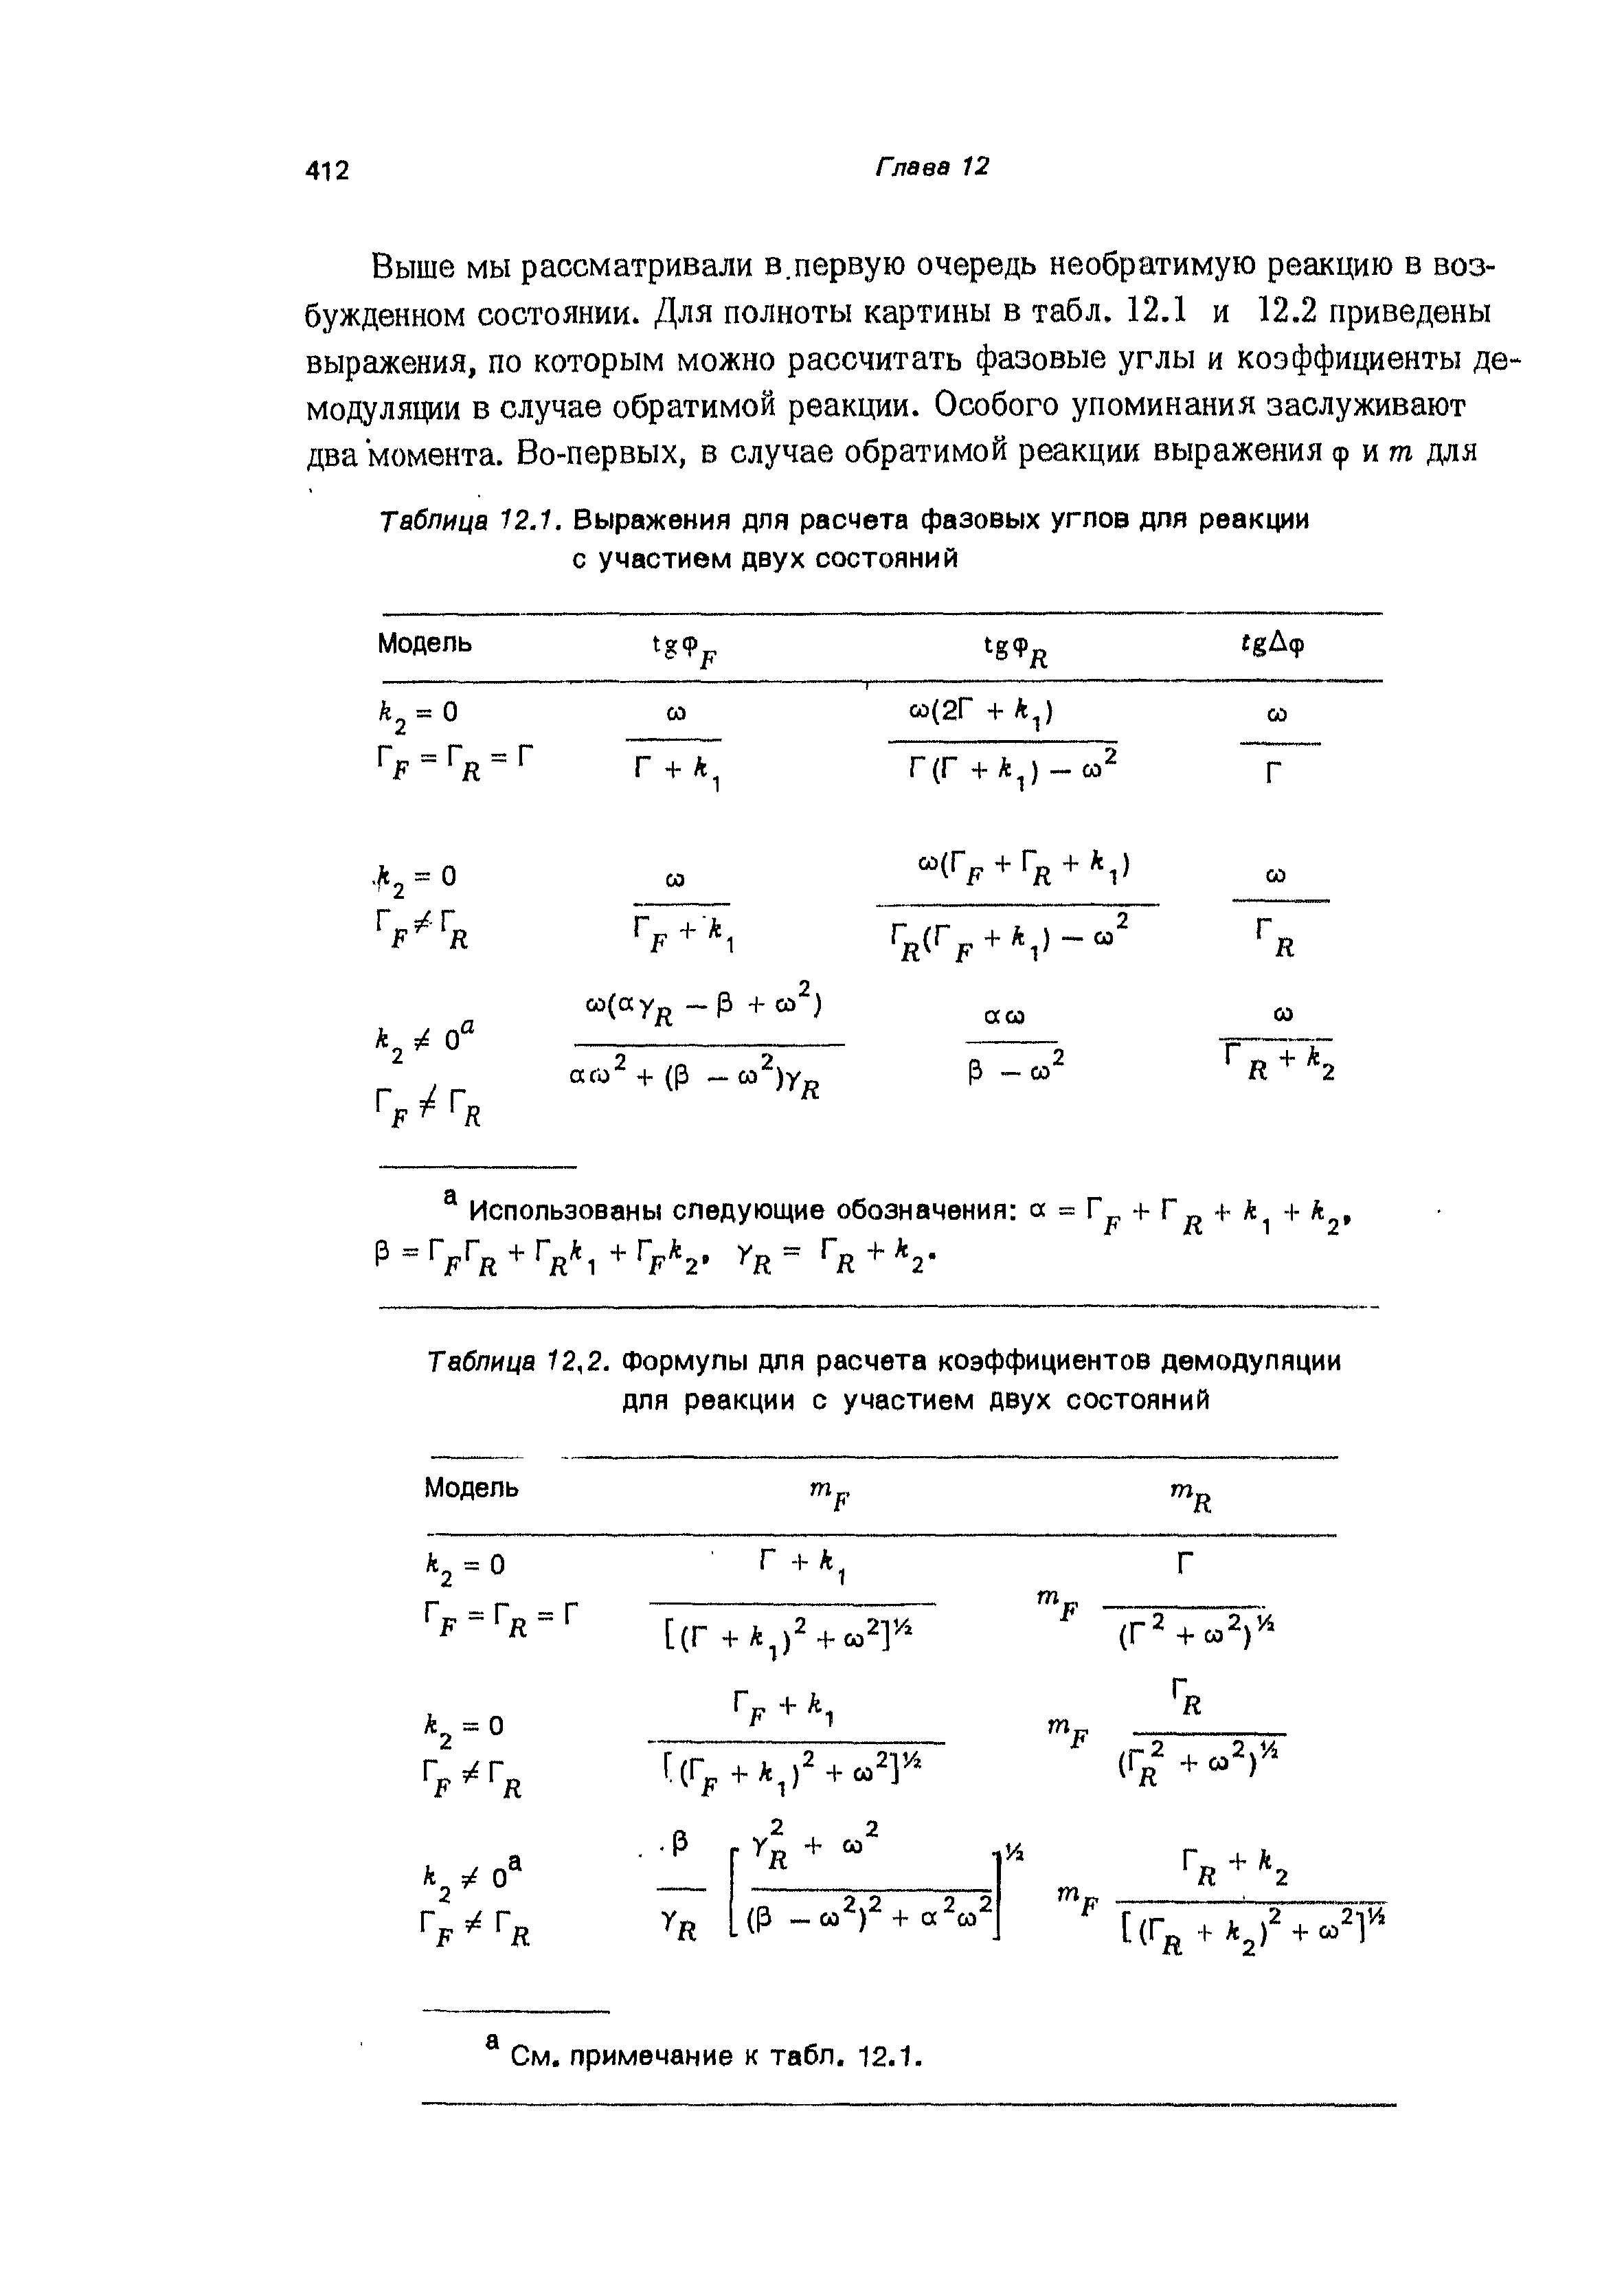 Таблица 12.1. Выражения для расчета фазовых углов для реакции с участием двух состояний
